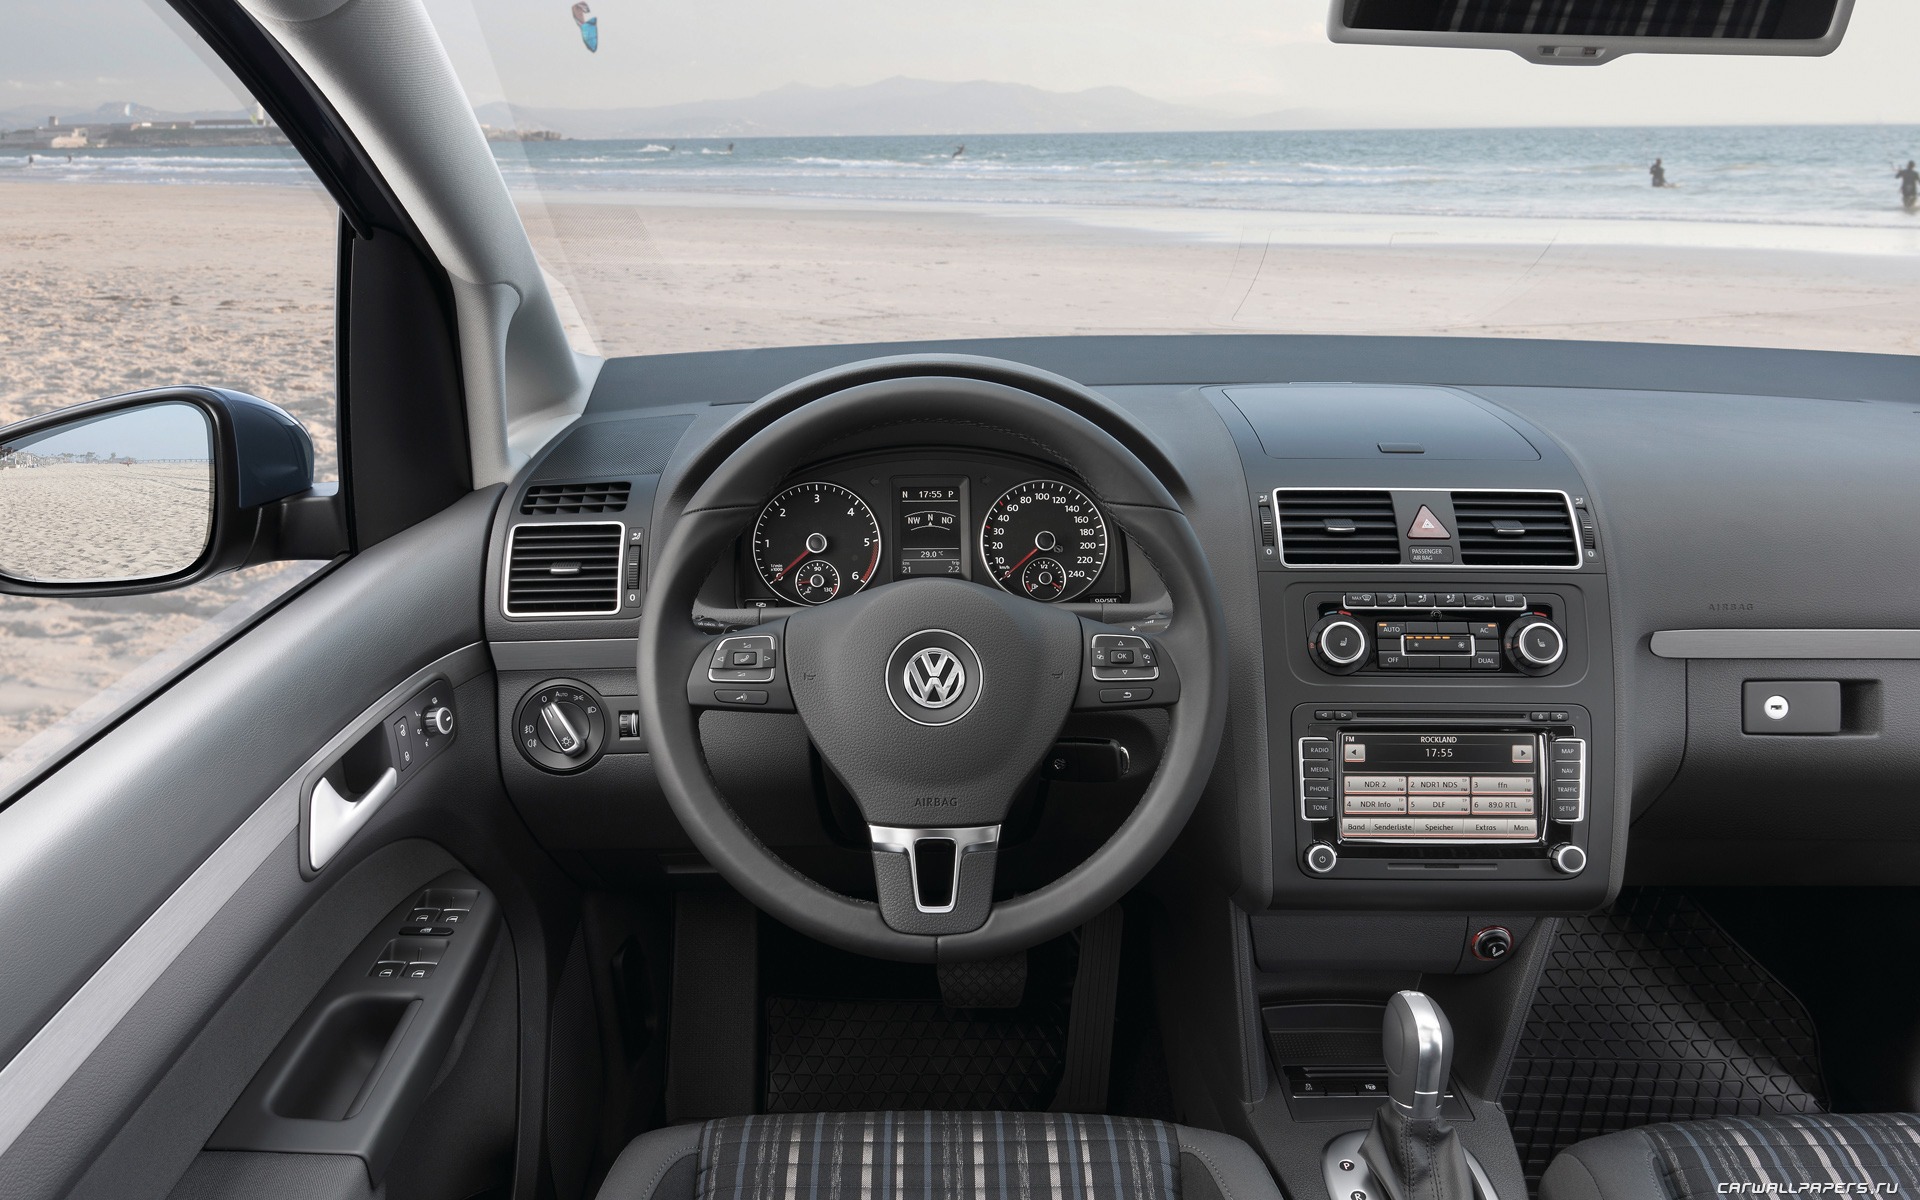 Volkswagen CrossTouran - 2010 大众14 - 1920x1200